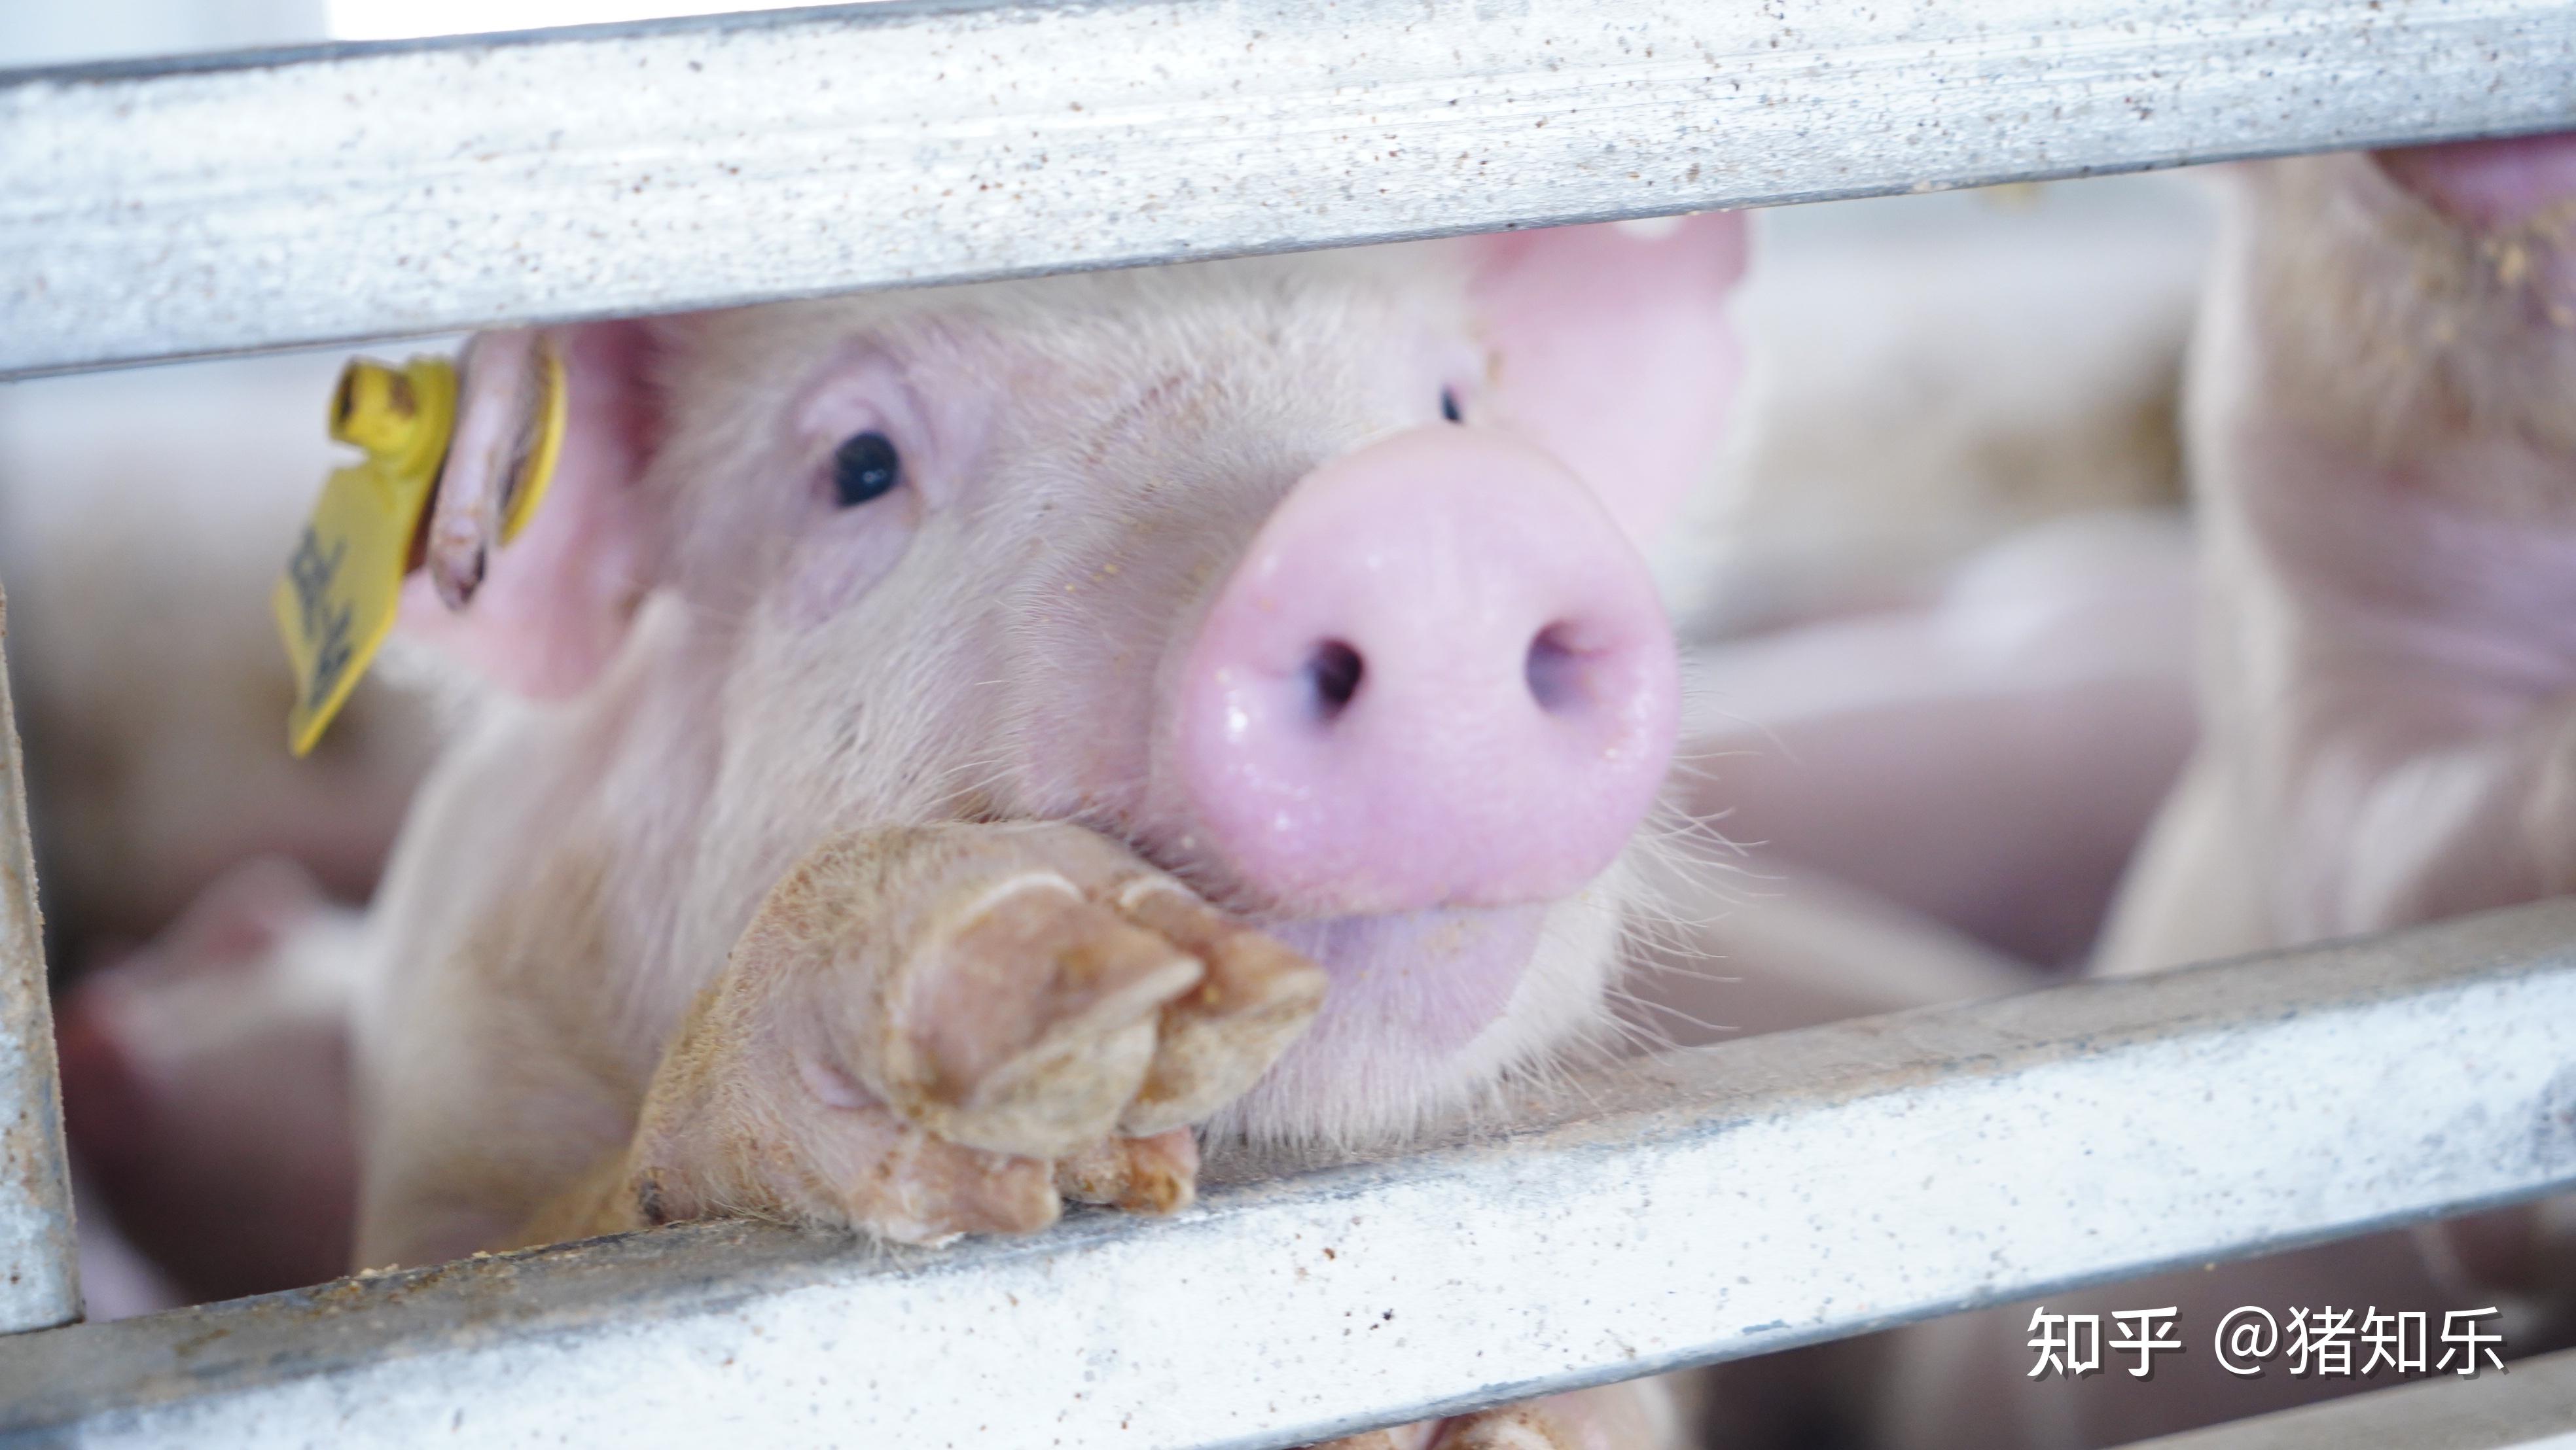 从育种到食品，德康500头终端父本种猪隔离完成 - 图说猪事——中国养猪网 - 中国养猪网-中国养猪行业门户网站